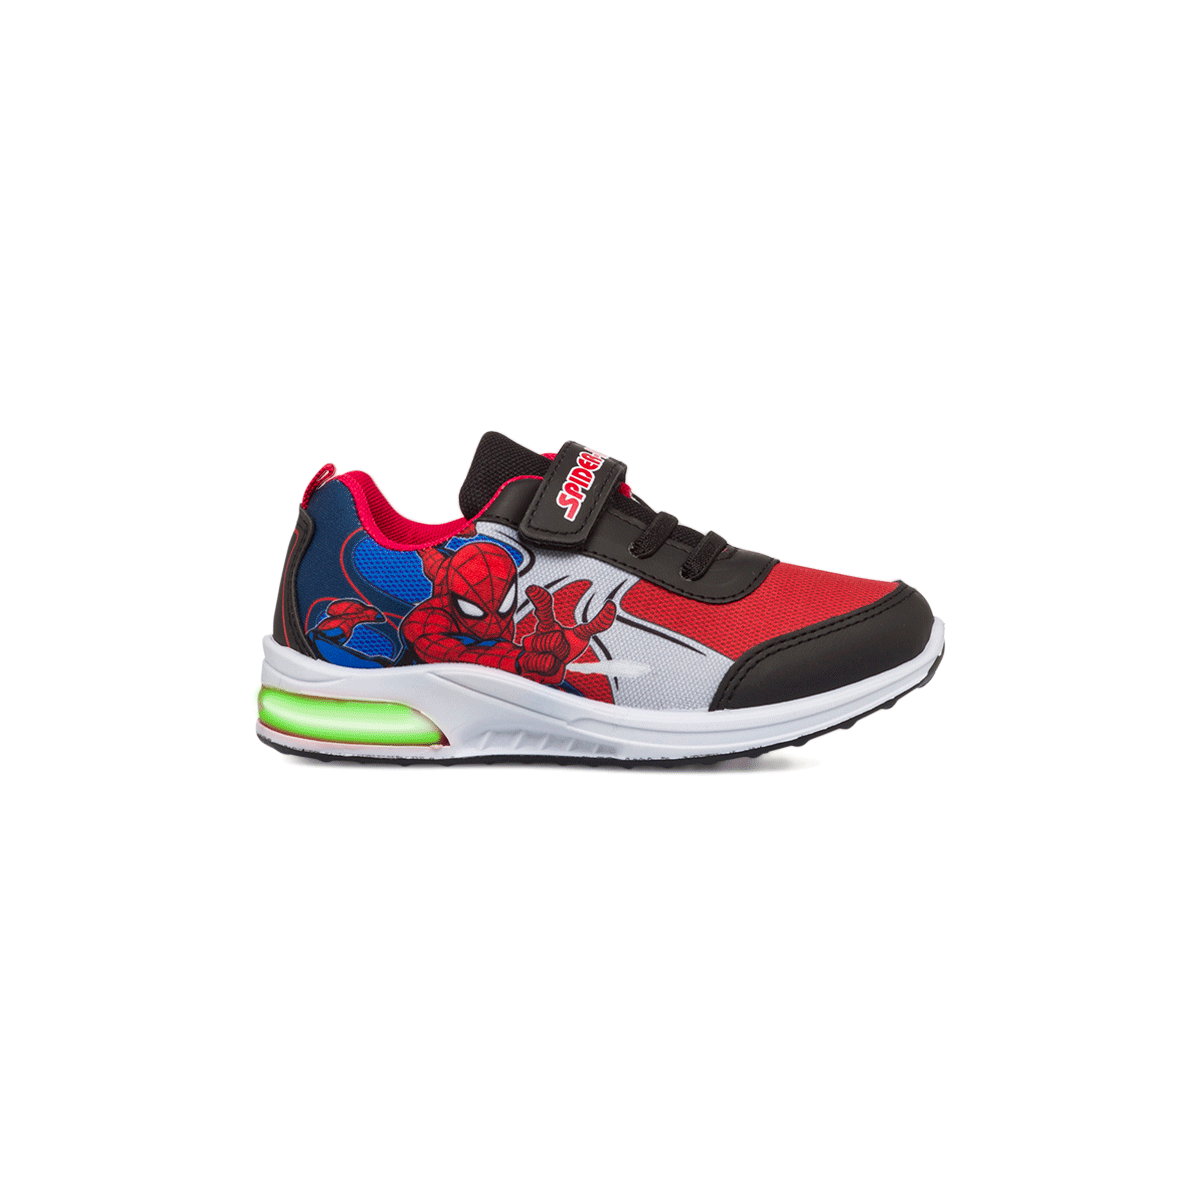 Sneakers primi passi da bambino rosse e blu con luci nella suola e stampa Spiderman, Scarpe Primi passi, SKU s332000097, Immagine 0